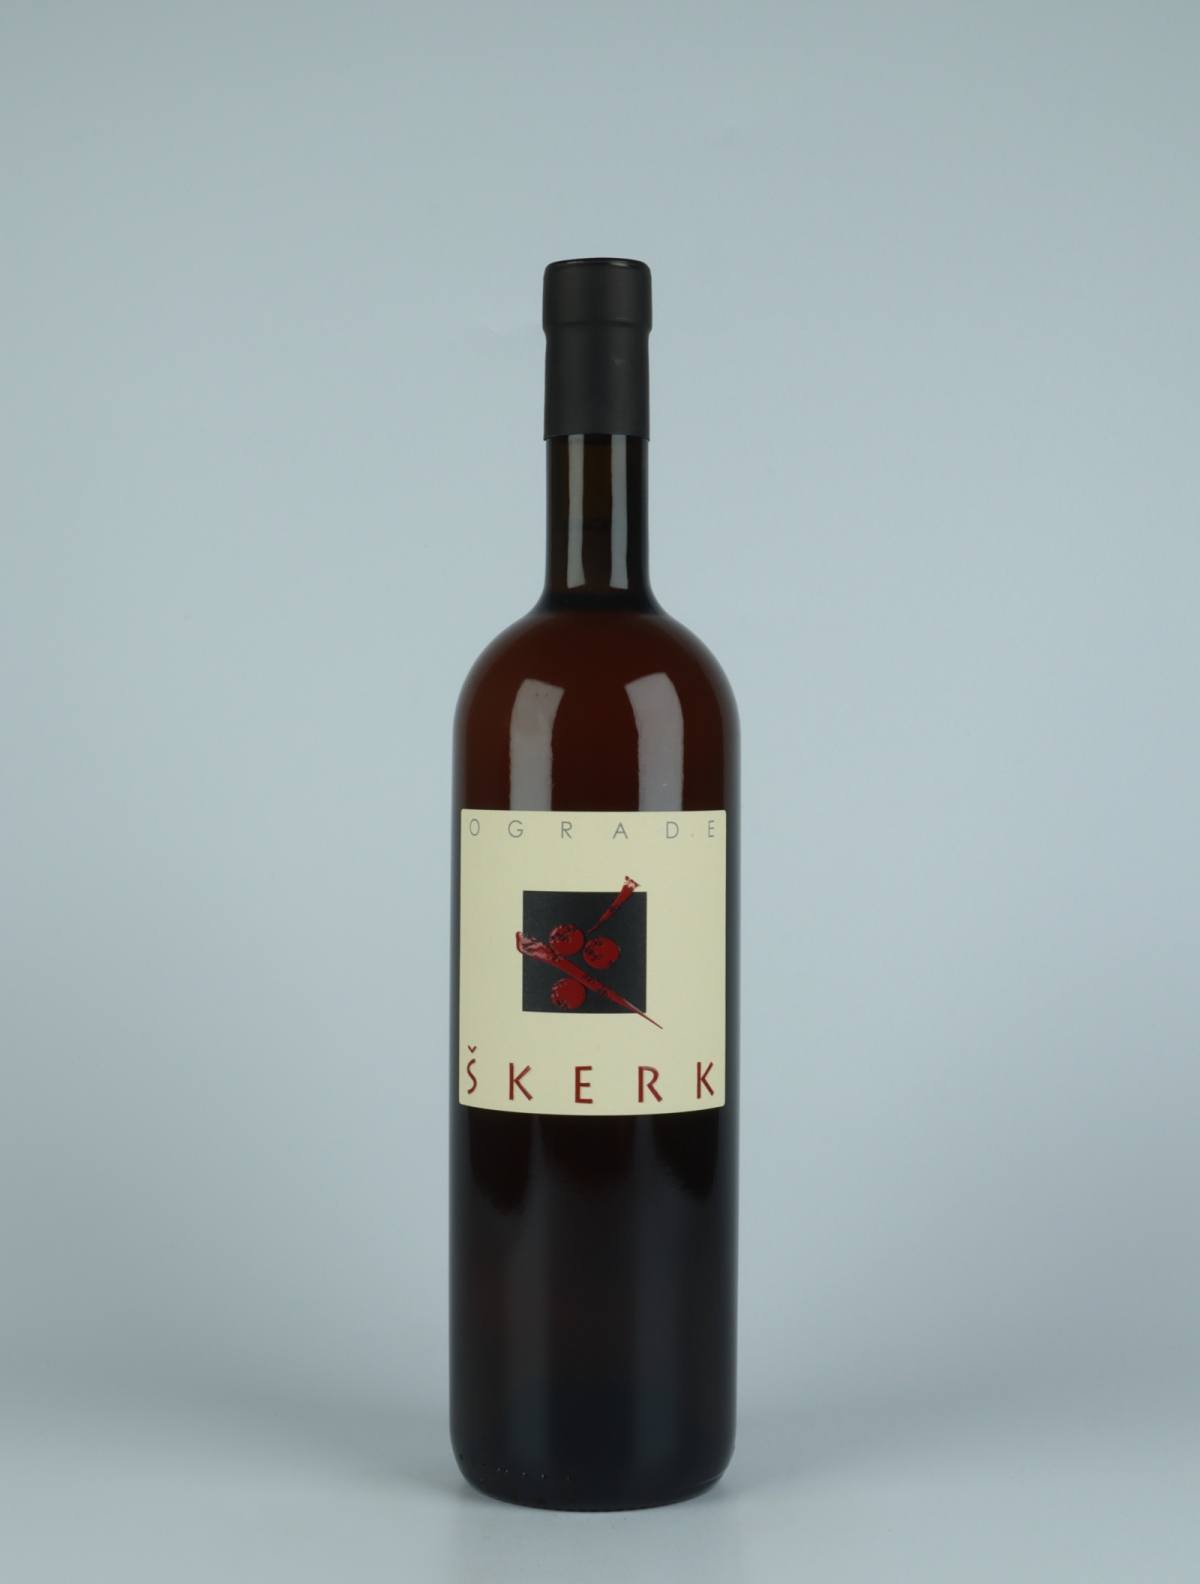 En flaske 2020 Ograde Orange vin fra Skerk, Friuli i Italien